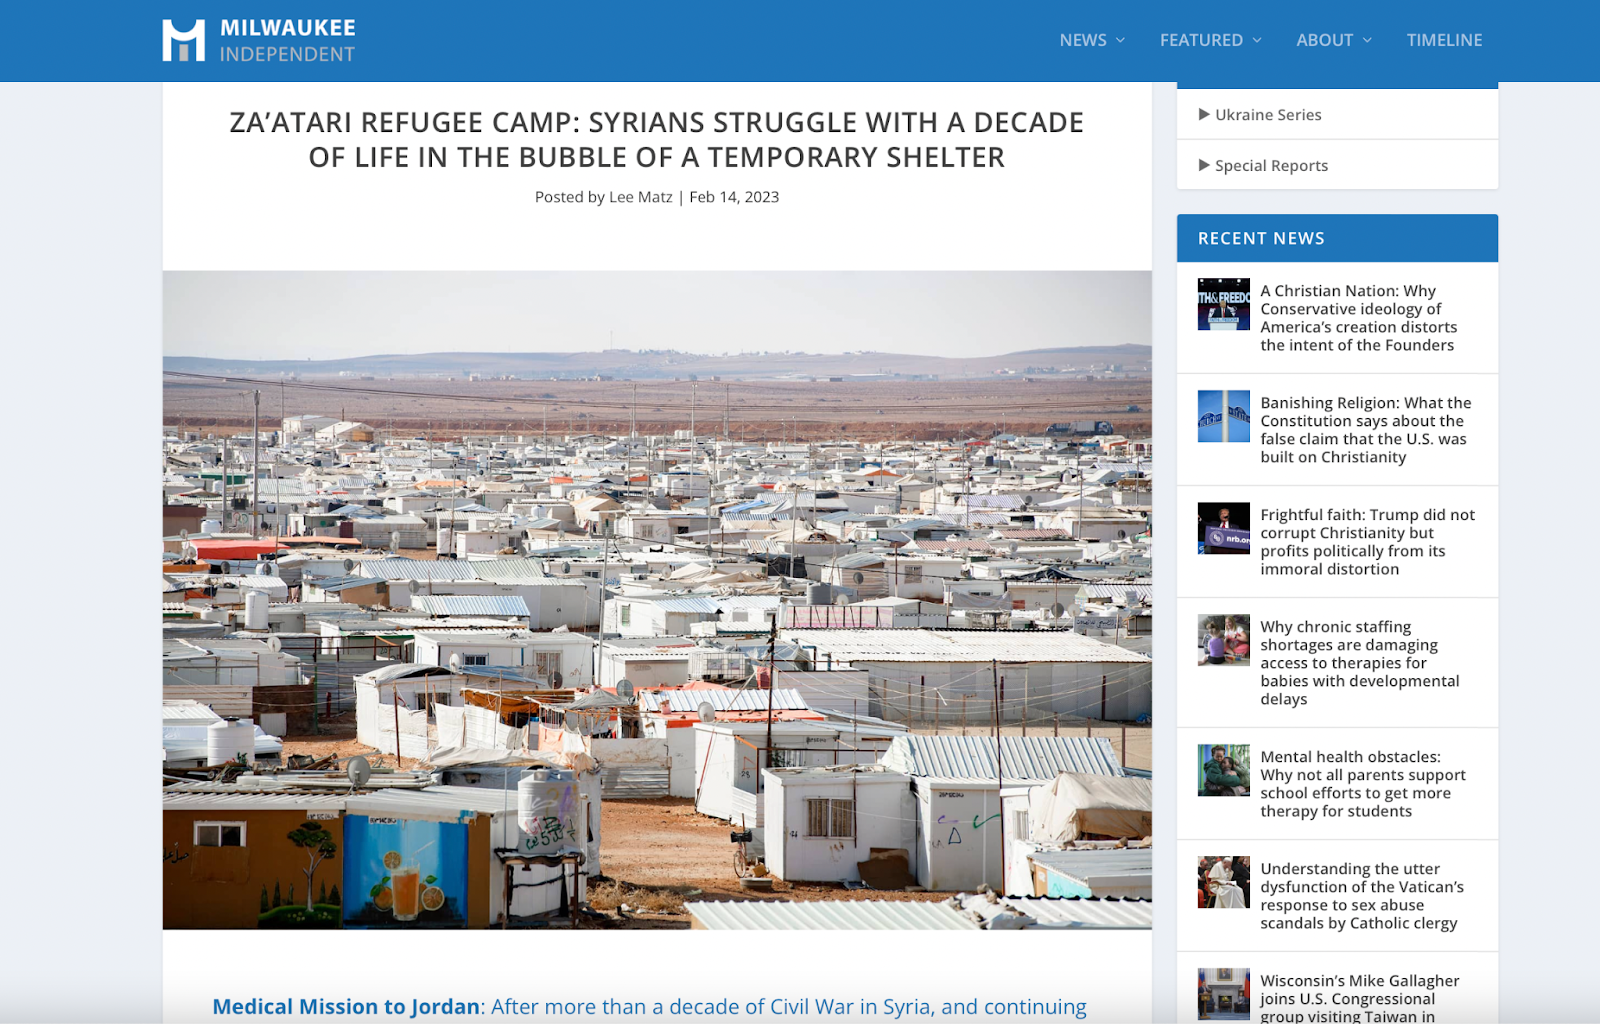 تقرير صحيفة ميلووكي إنديبيندنت الأميركية الذي غطّى مهمة الجمعية الطبية السورية الأمريكية إلى مخيم الزعتري في الأردن